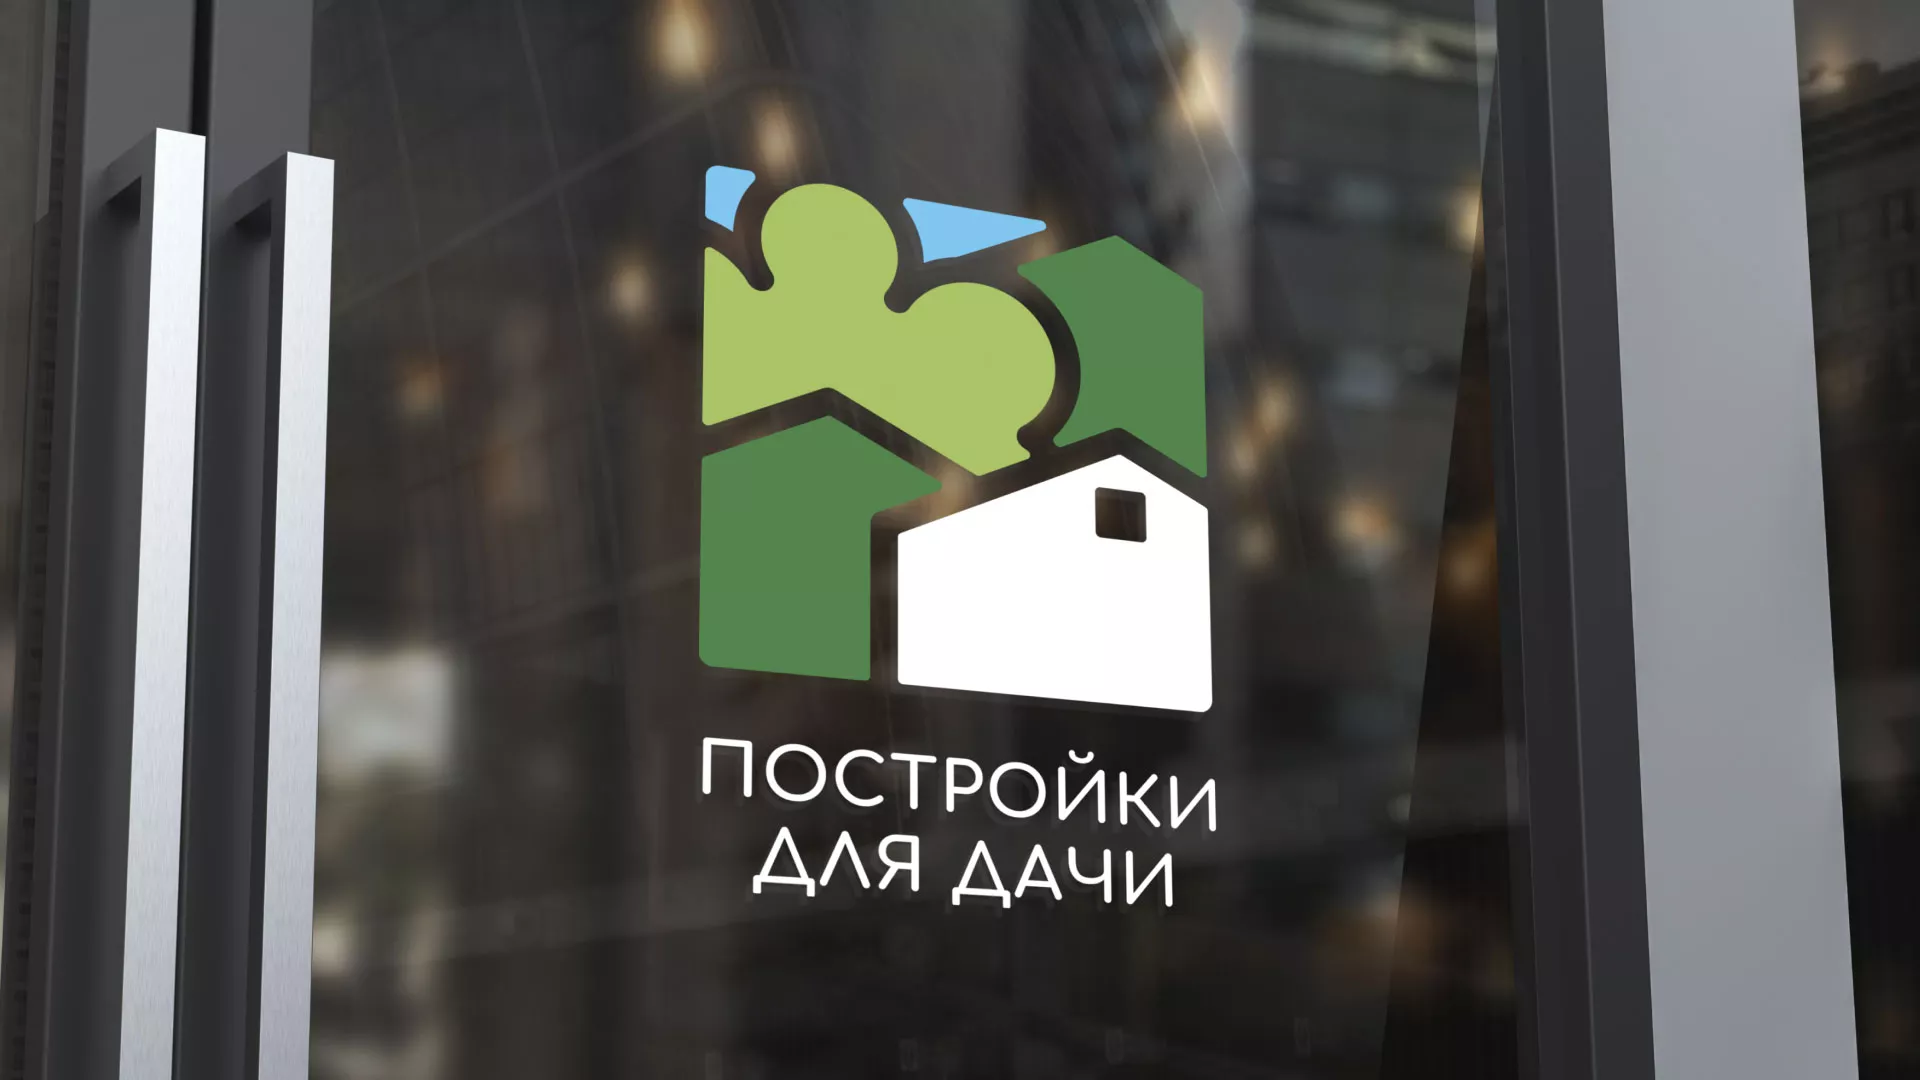 Разработка логотипа в Старой Руссе для компании «Постройки для дачи»